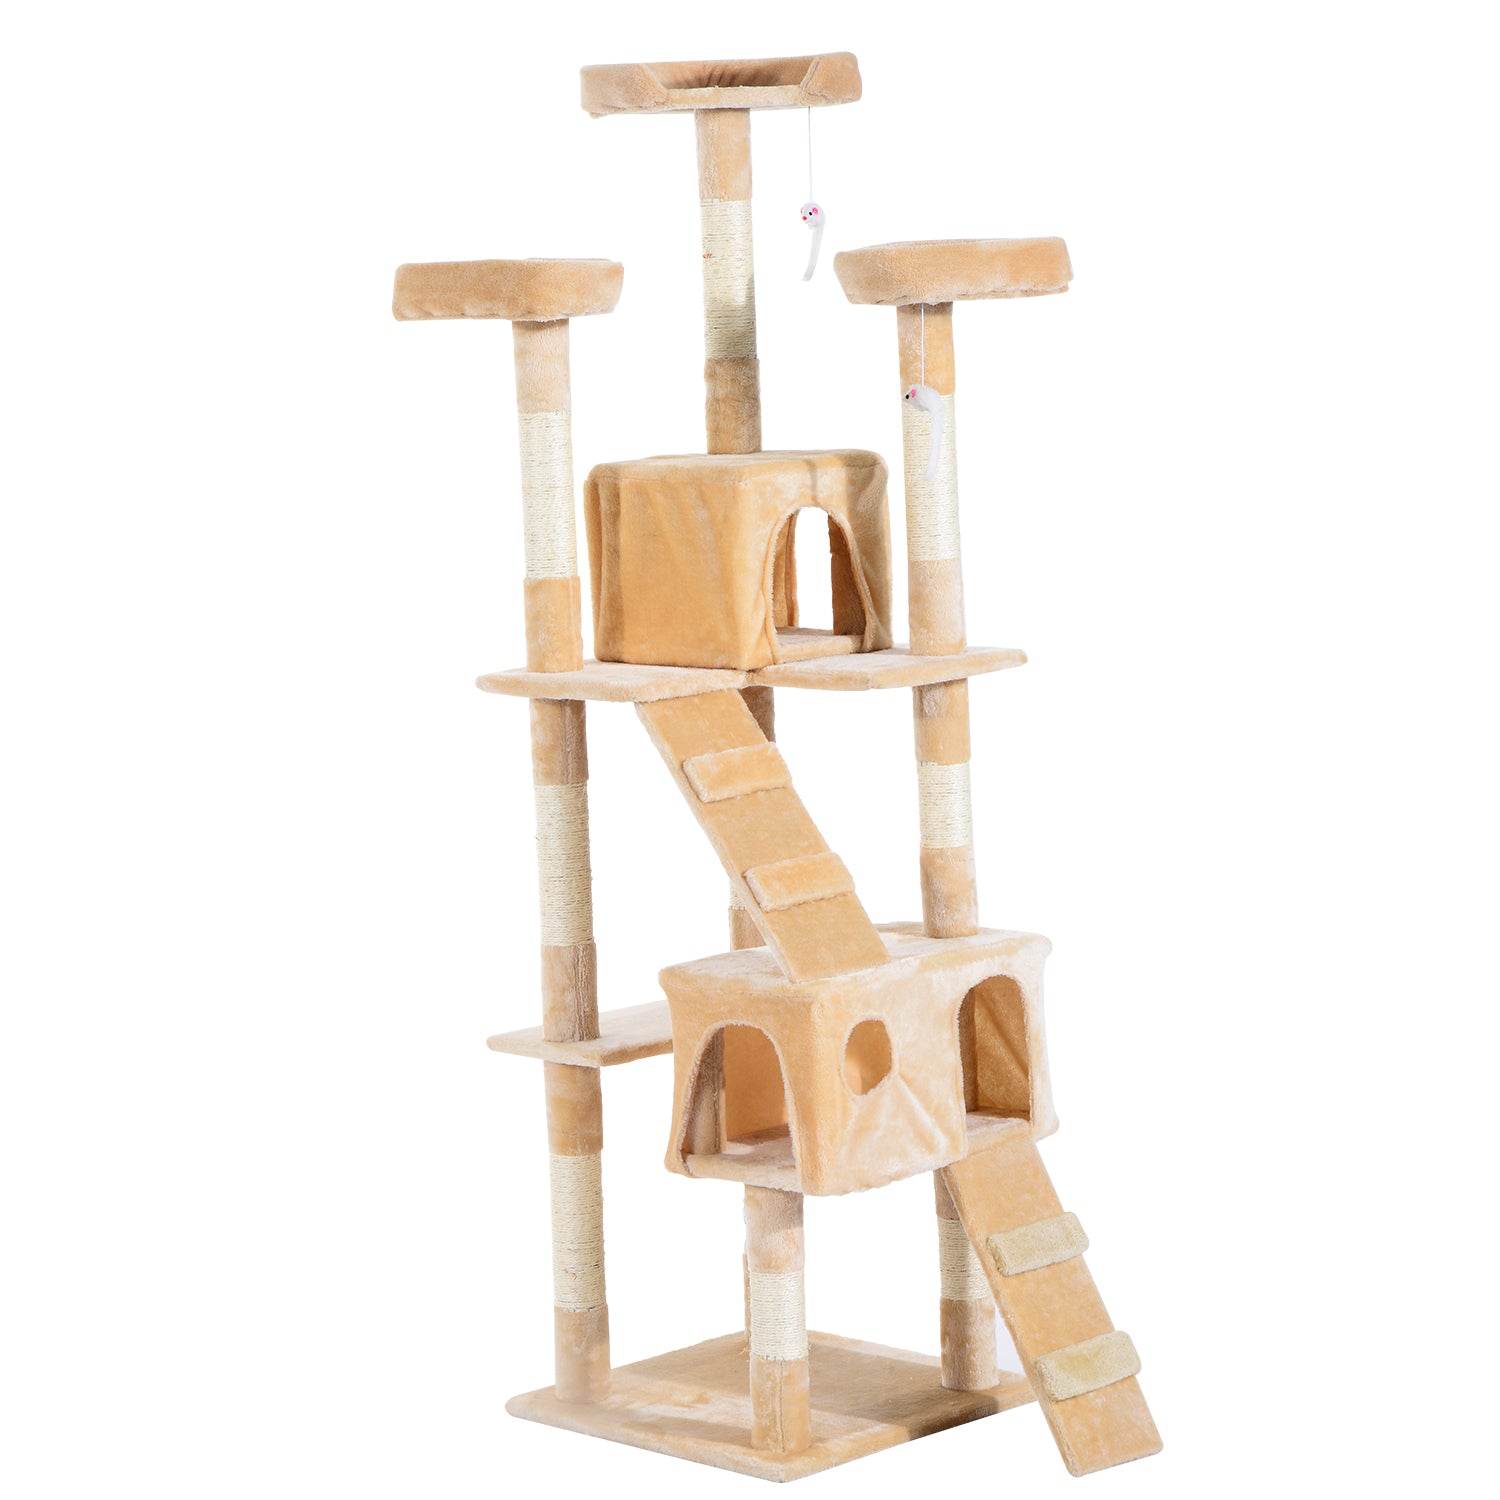 170cm Cat Tree Kitten Kitty Scratcher Post Climbing Tower Activity Center House-Cream